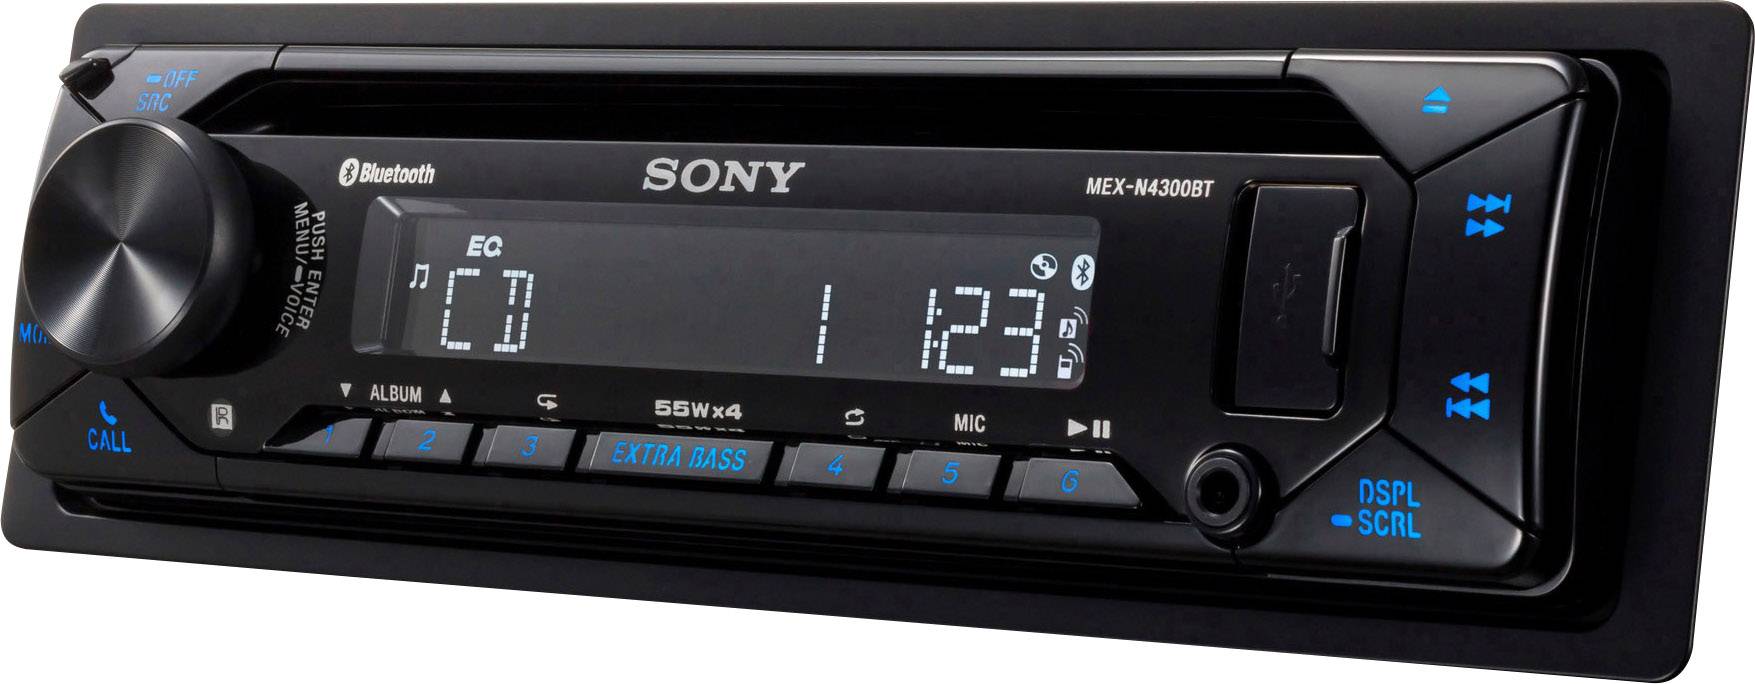 Allemaal Kritisch Detecteren Peugeot 407 (2004-2011) Sony Bluetooth CD MP3 USB AUX iPhone ...